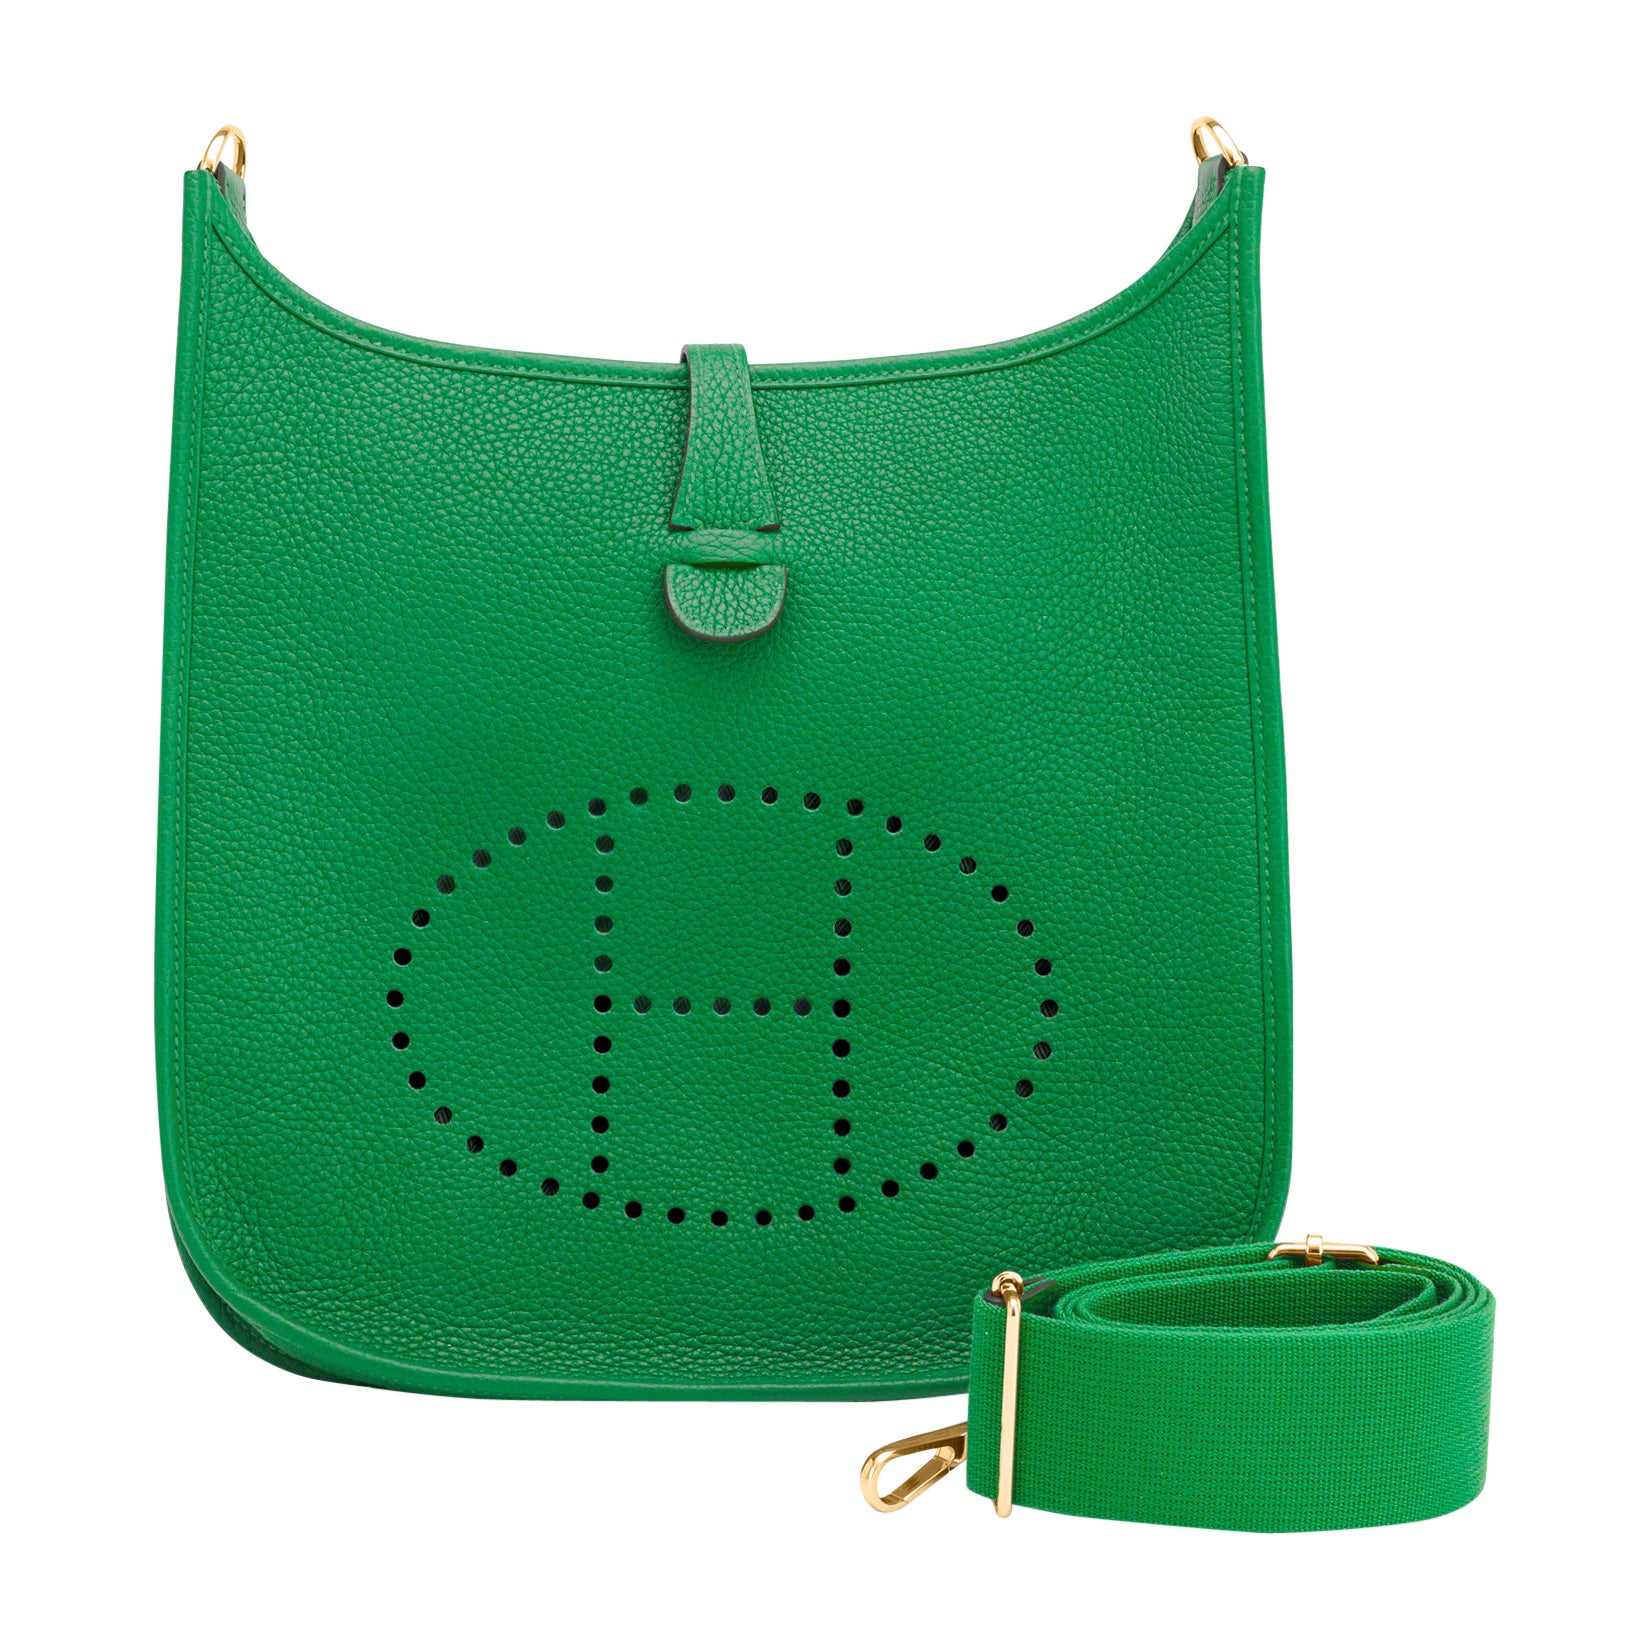 Hermes Evelyne Bag Colors - For Sale on 1stDibs